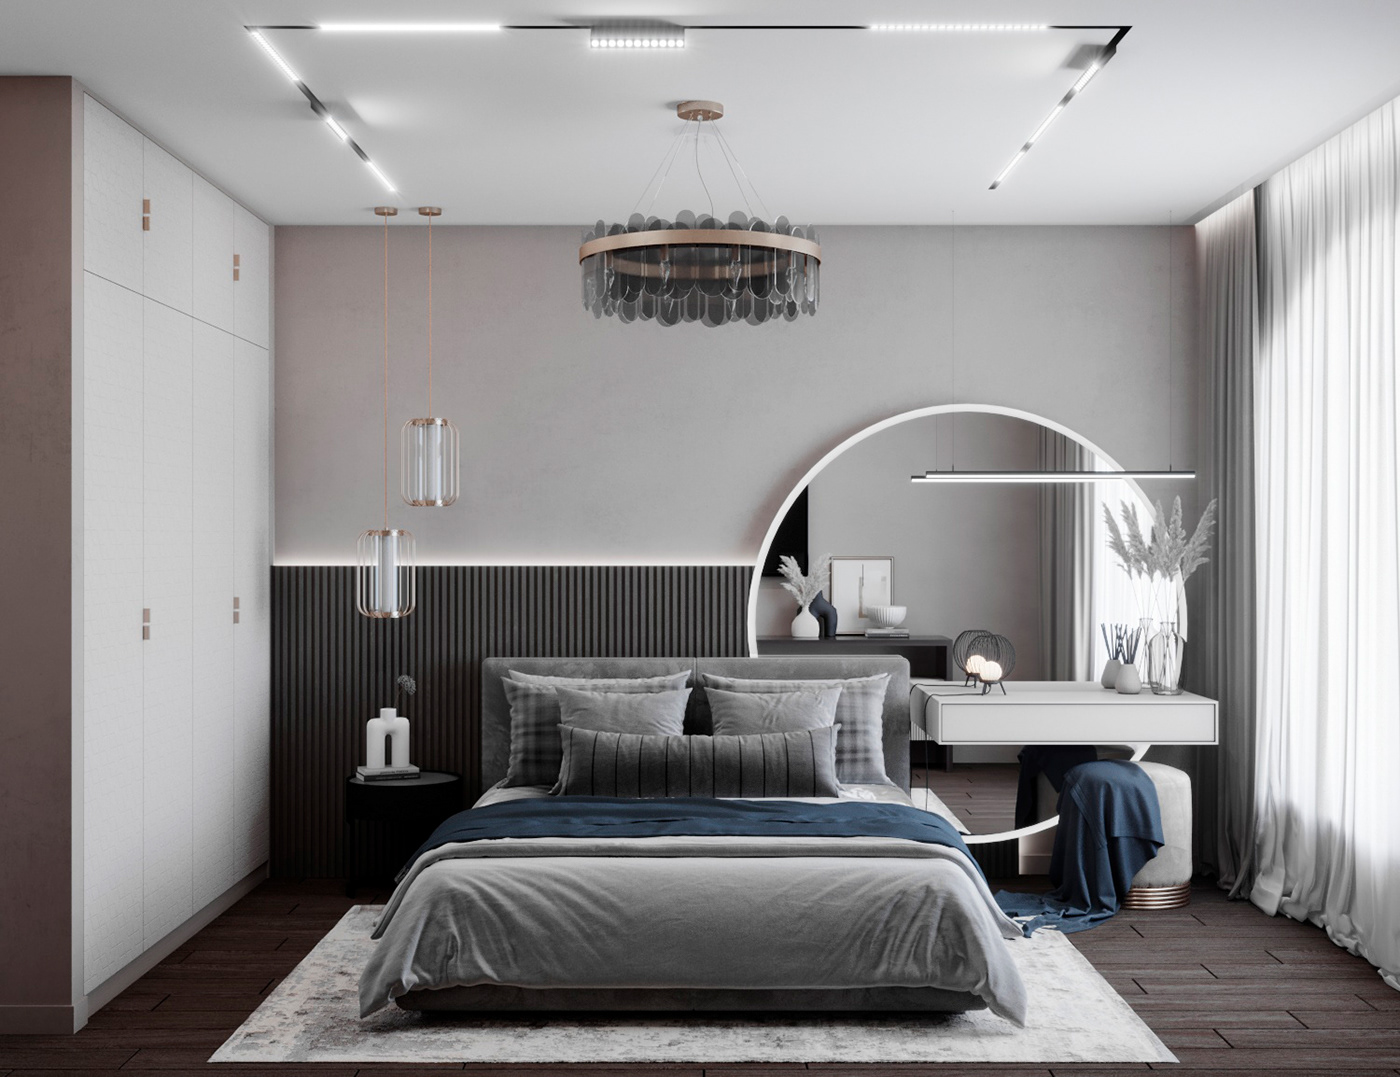 спальня bedroom interior design  интерьер дизайн интерьера Визуализация интерьера Дизайн квартиры Интерьер квартиры современный дизайн современный интерьер